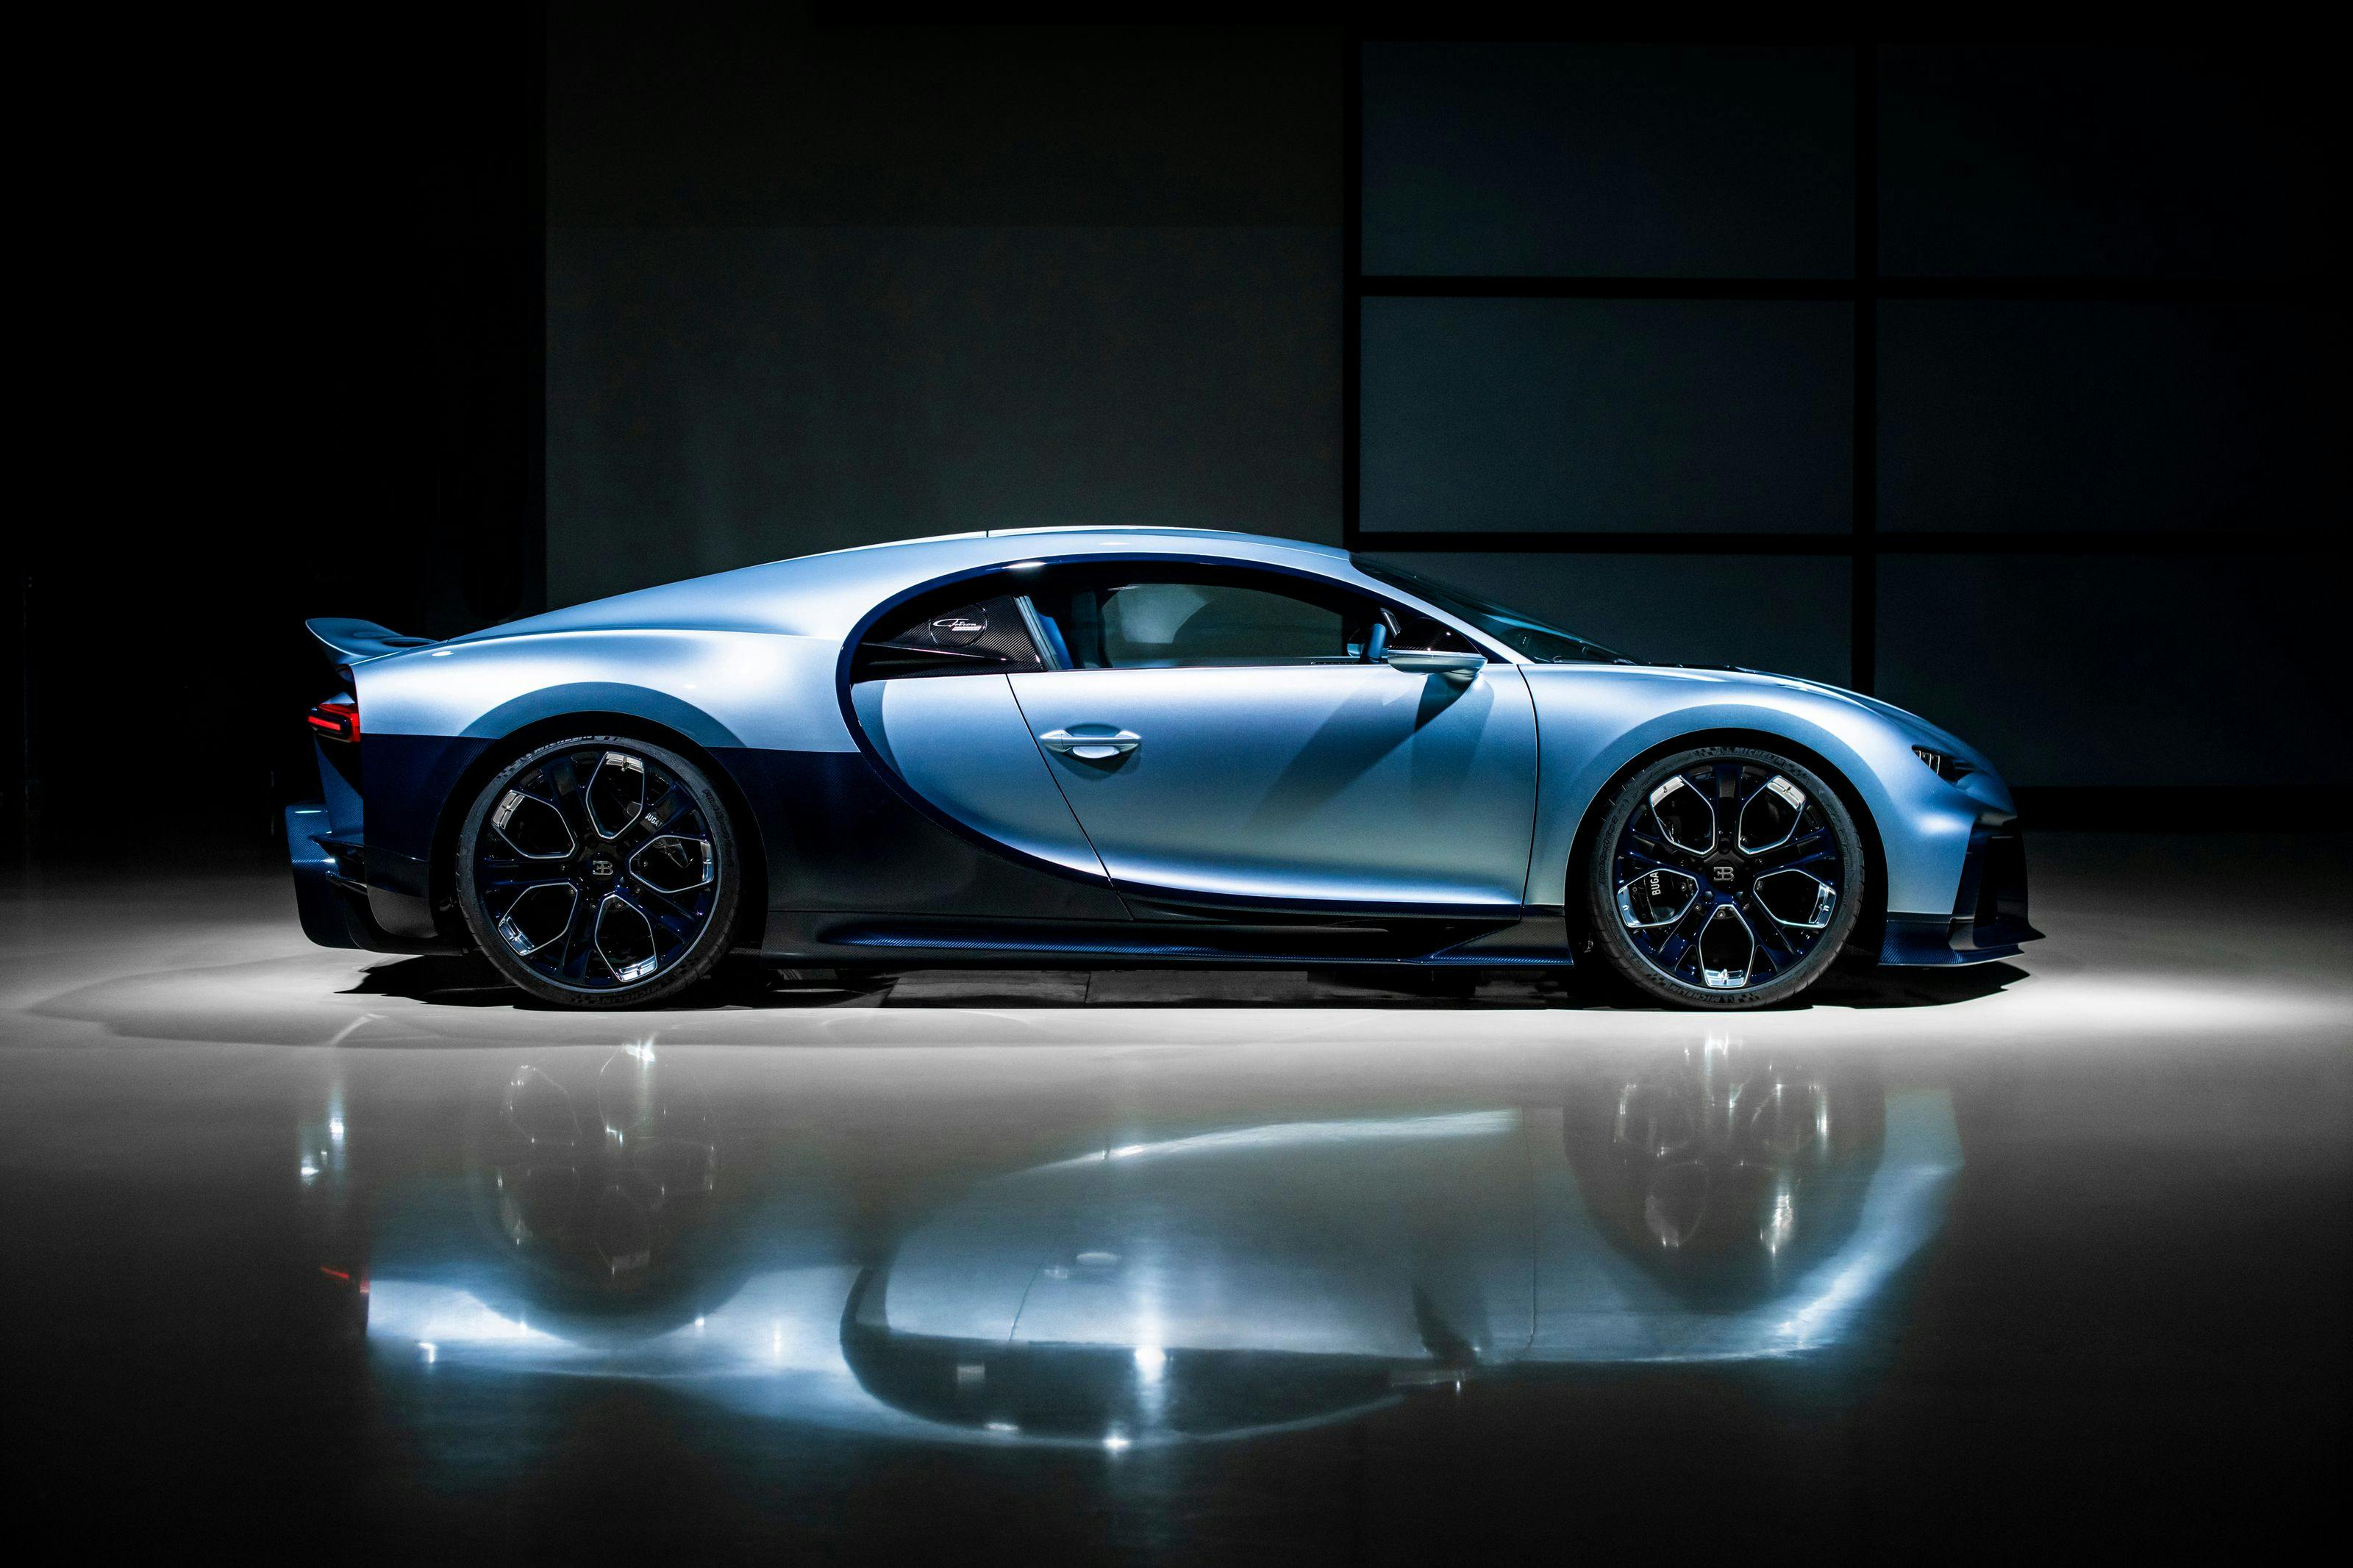 Letzter ab Werk erhältlicher Bugatti mit legendärem W16-Motor wird diese Woche versteigert